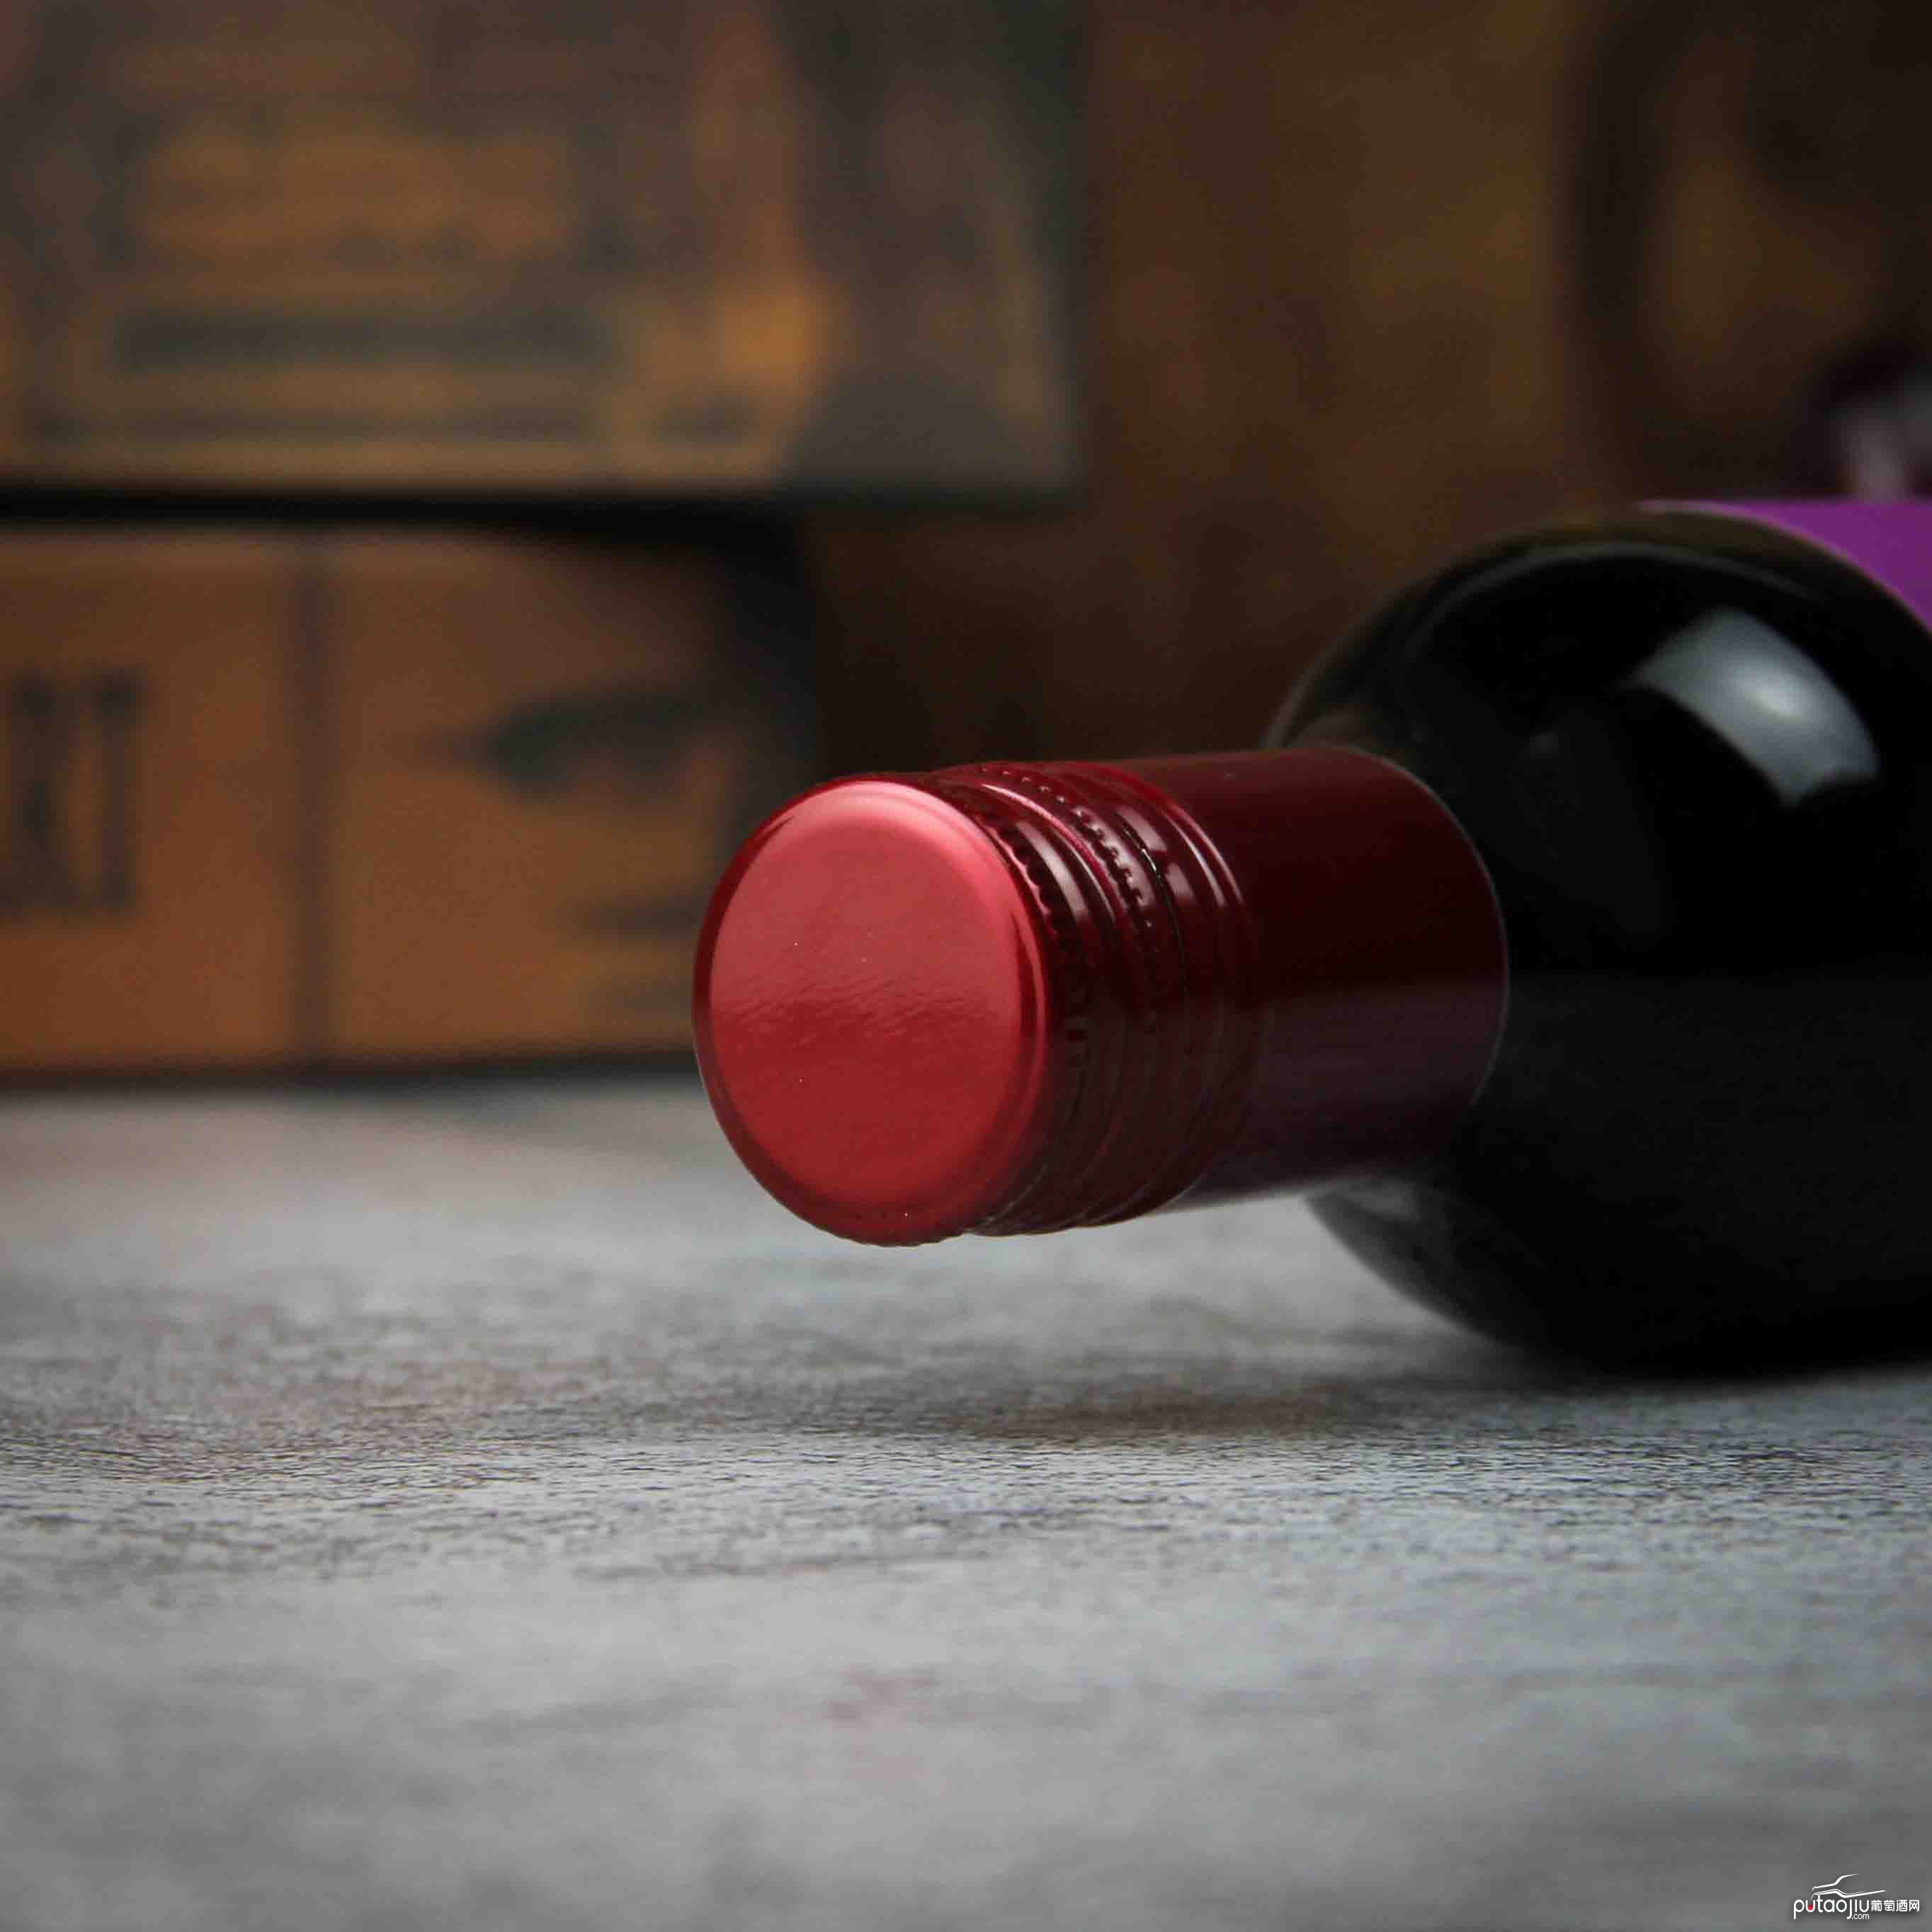 智利拉佩尔谷森林之王马贝克干红葡萄酒（187ML）